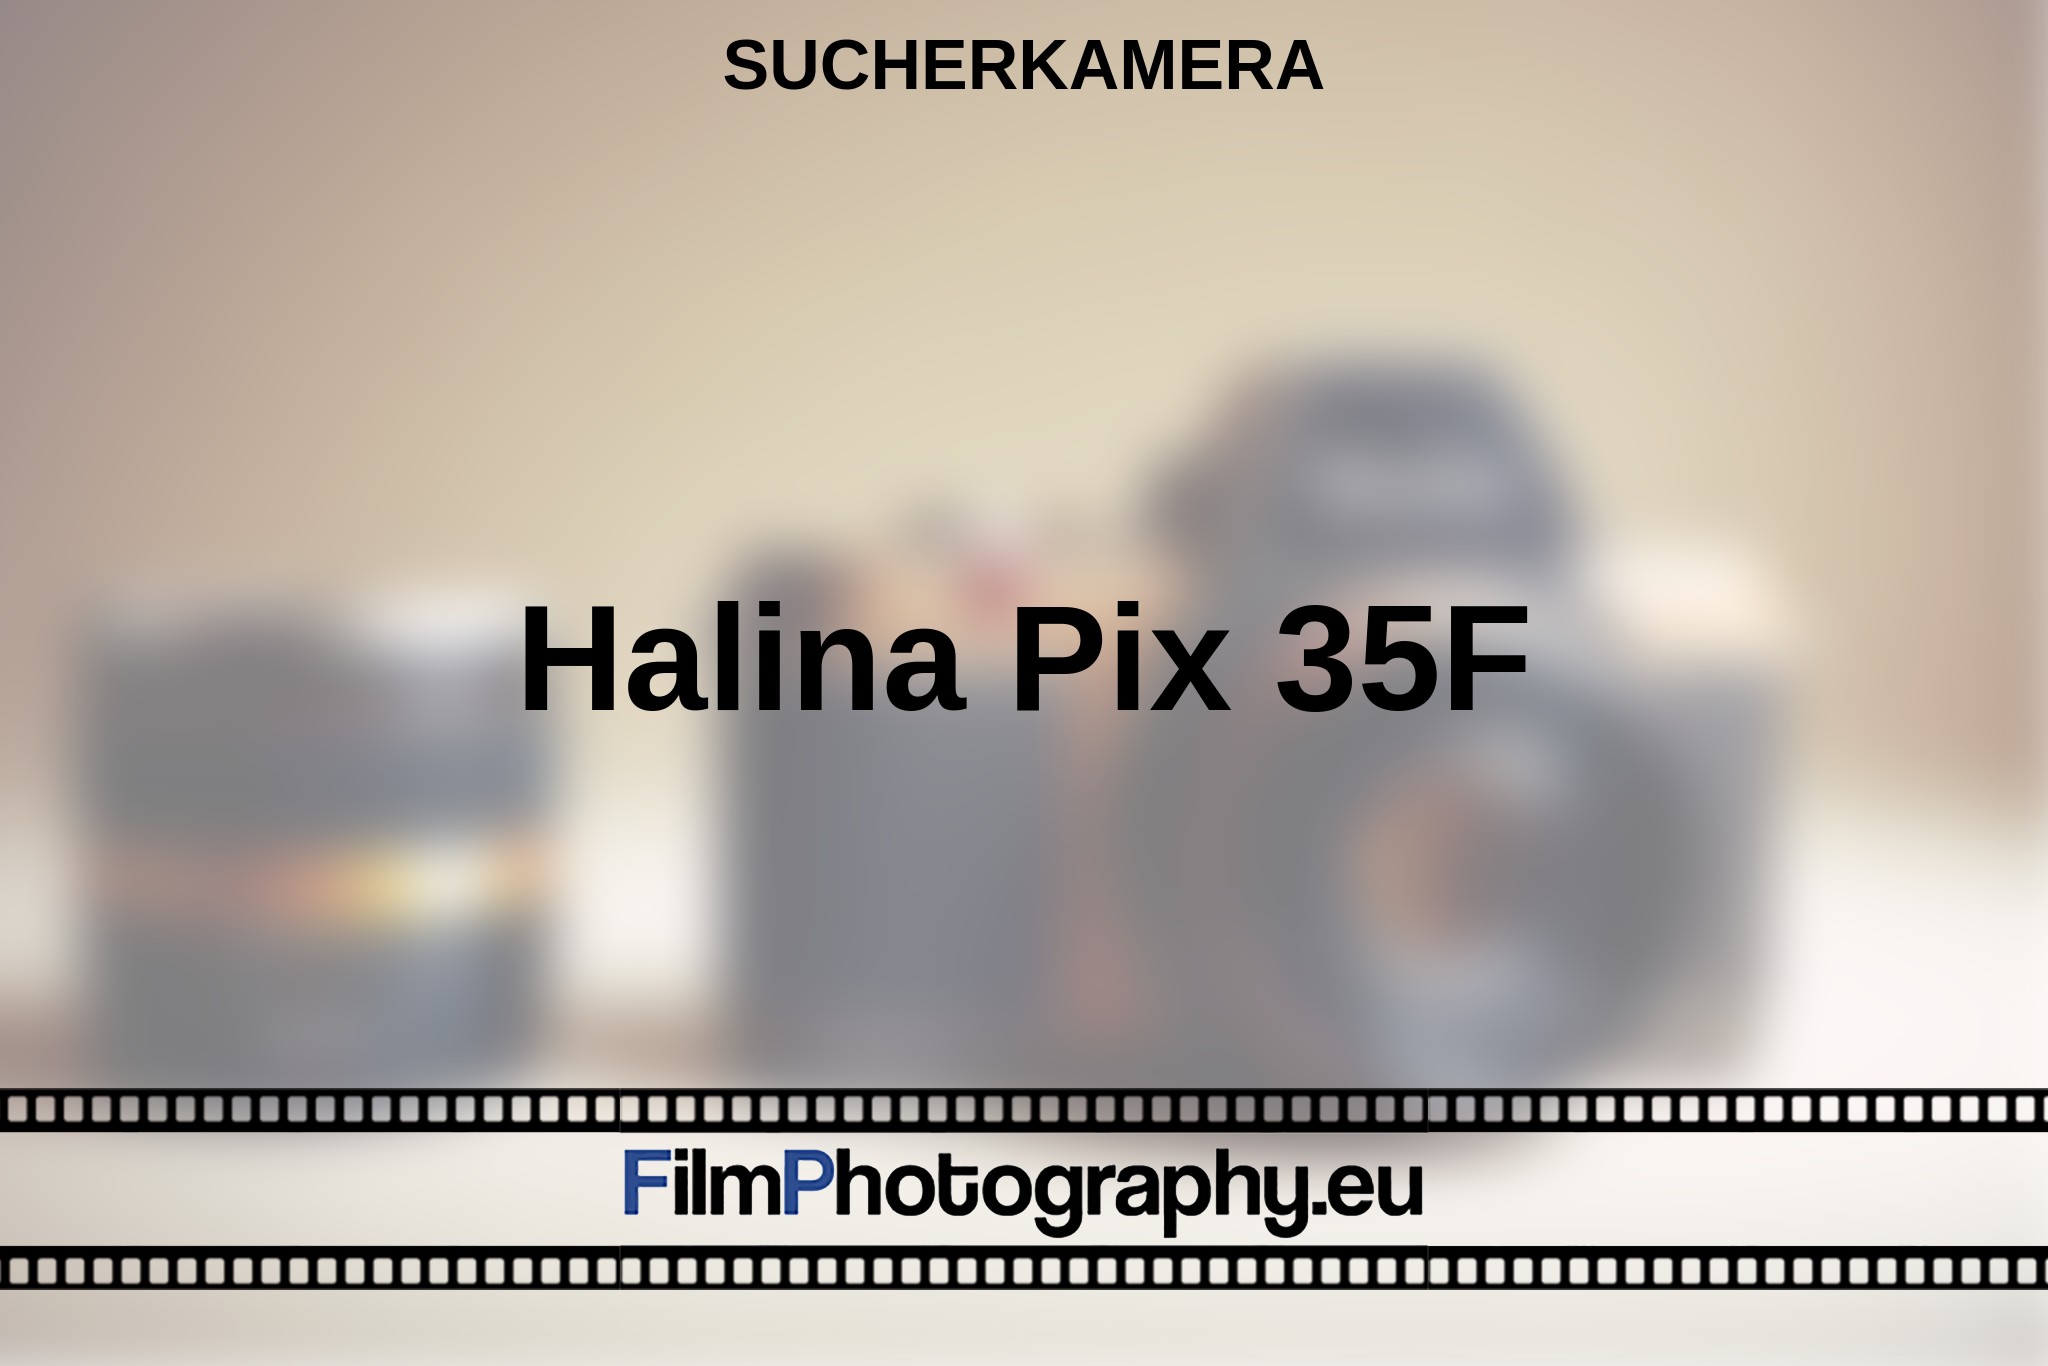 halina-pix-35f-sucherkamera-bnv.jpg